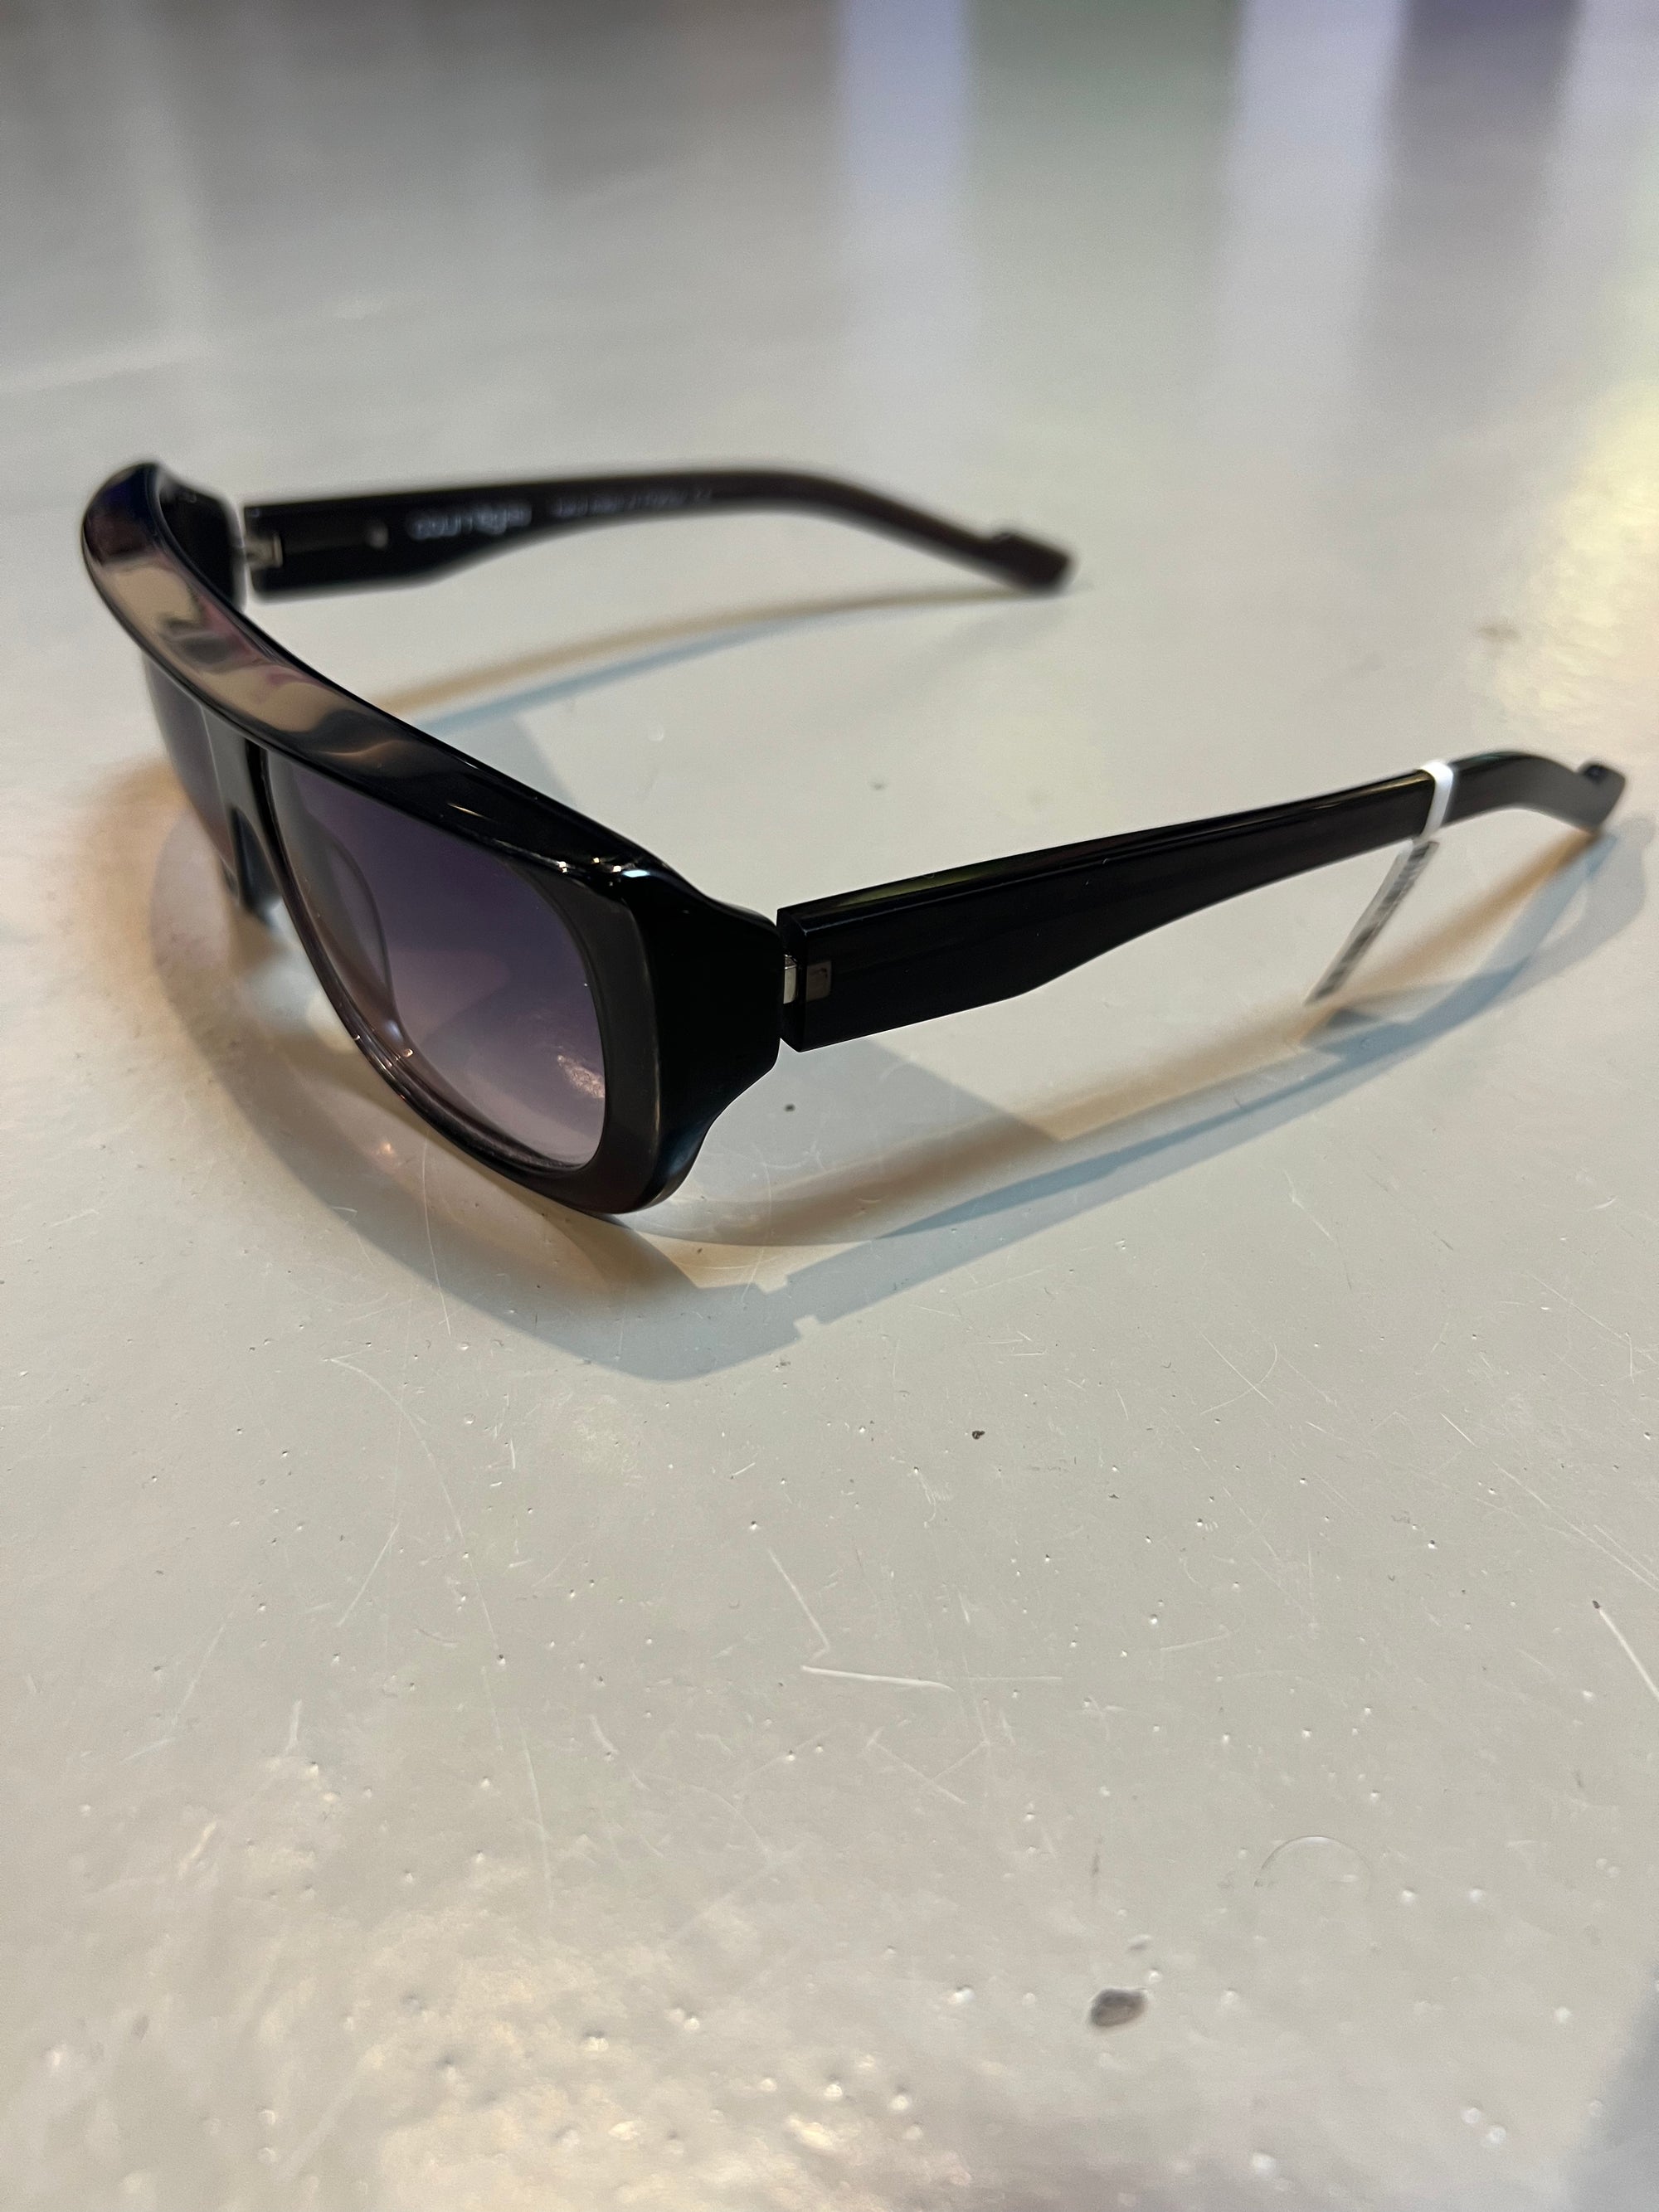 Produktbild einer Alain Mikli Paris Sonnenbrille vor grauem Hintergrund.